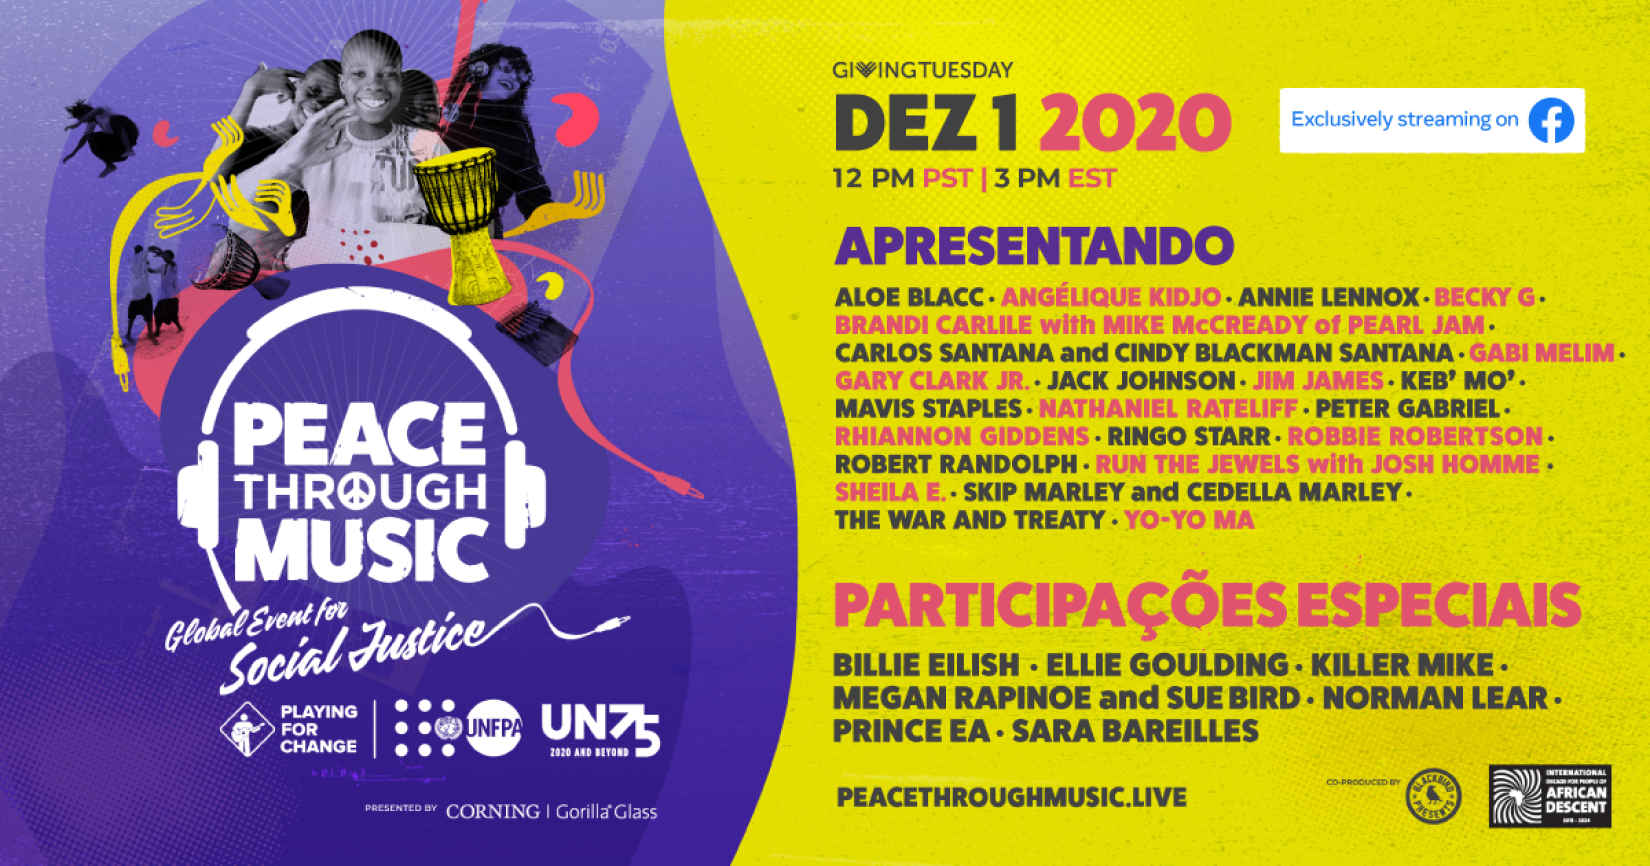 O evento acontecerá nesta terça-feira, 1 de dezembro, na página da Playing For Change no Facebook, às 17h (horário de Brasília - 12h PST/15h EST. 